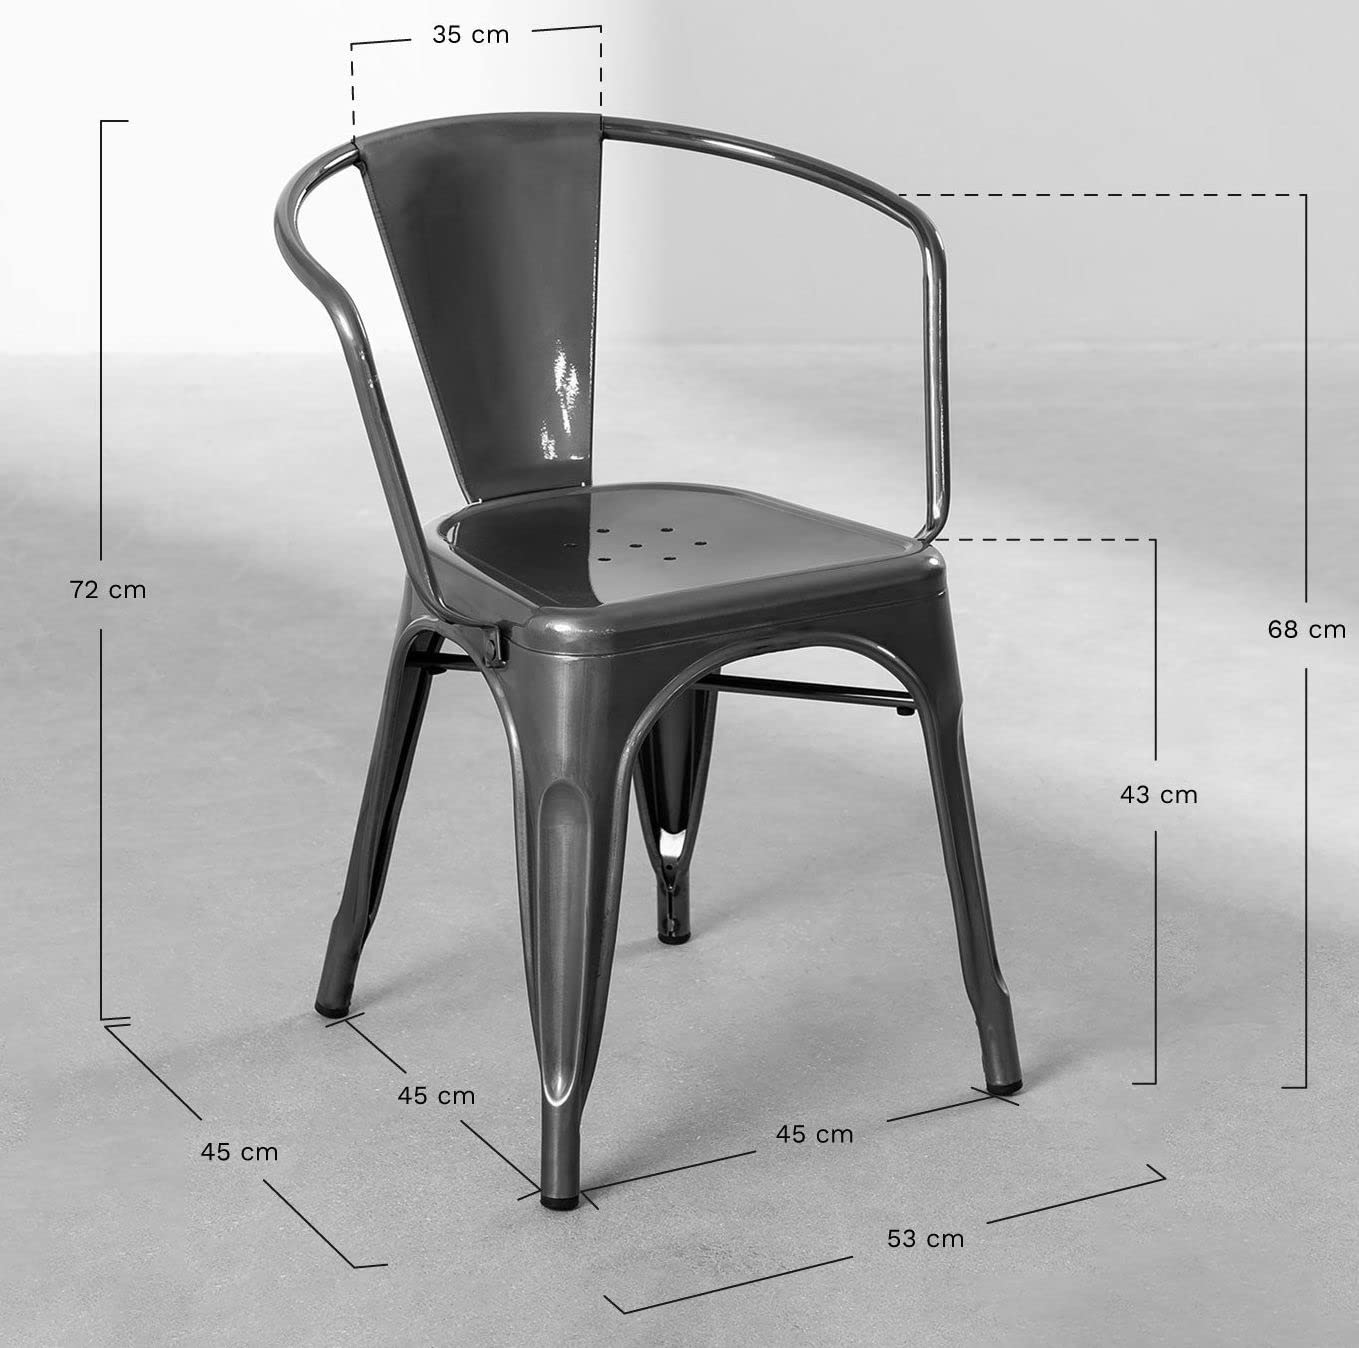 Chaise en métal noir mat style Industriel - Fauteuil industriel avec accoudoirs